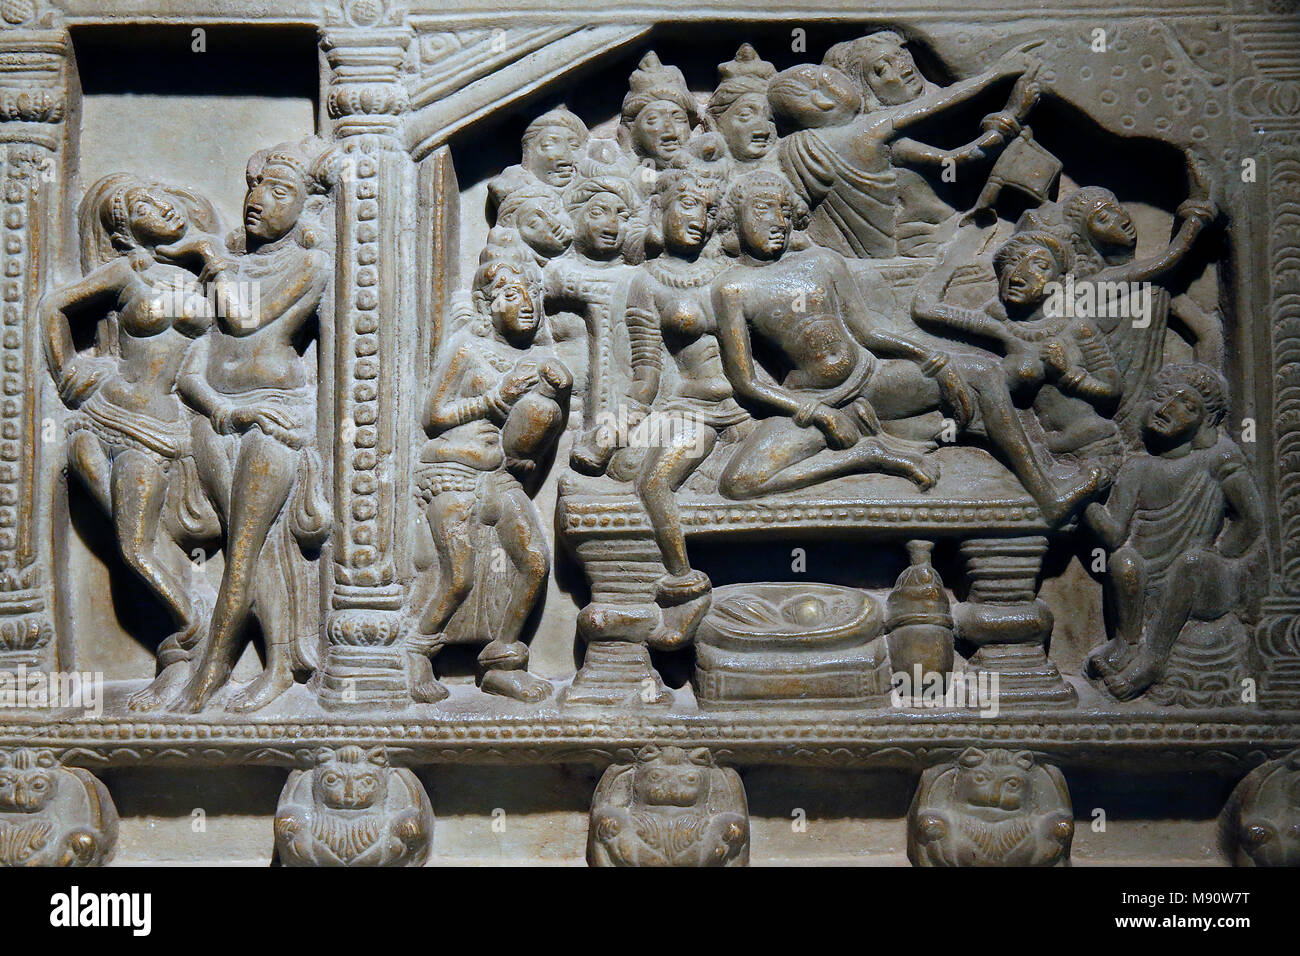 National Museum von Indien, Delhi. Ayaga Fries mit Szenen aus dem Leben des Buddha und der Jakatas. Ikshvaku, 3. Jahrhundert n. Chr. Nagarjunakonda, und Stockfoto